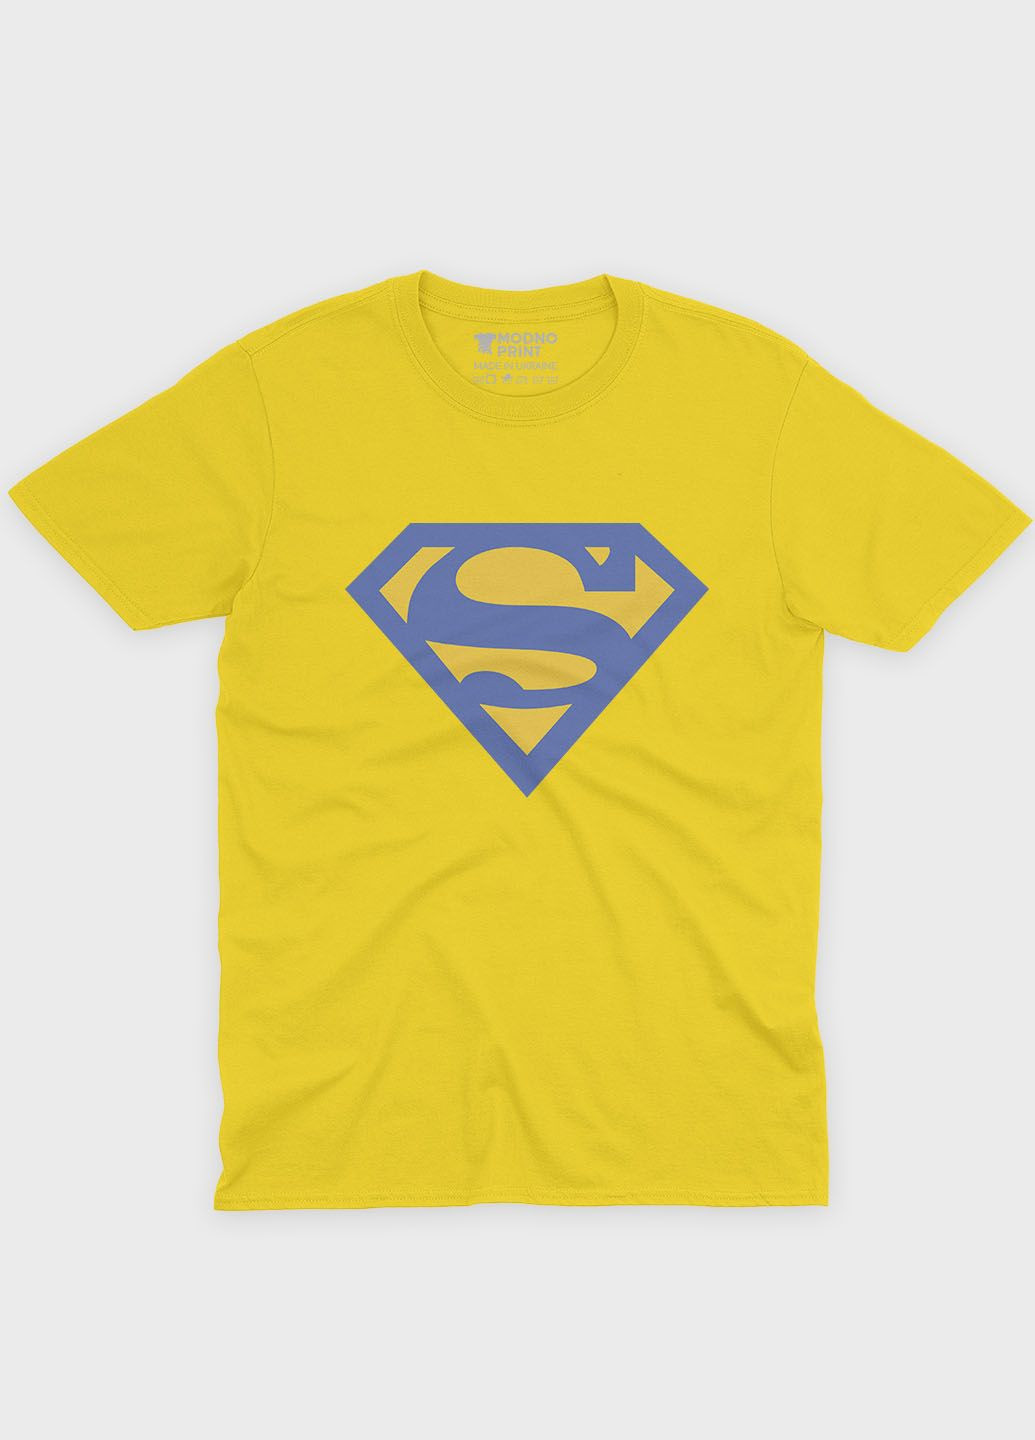 Жовта демісезонна футболка для дівчинки з патріотичним принтом (ts001-3-sun-005-1-060-g) Modno